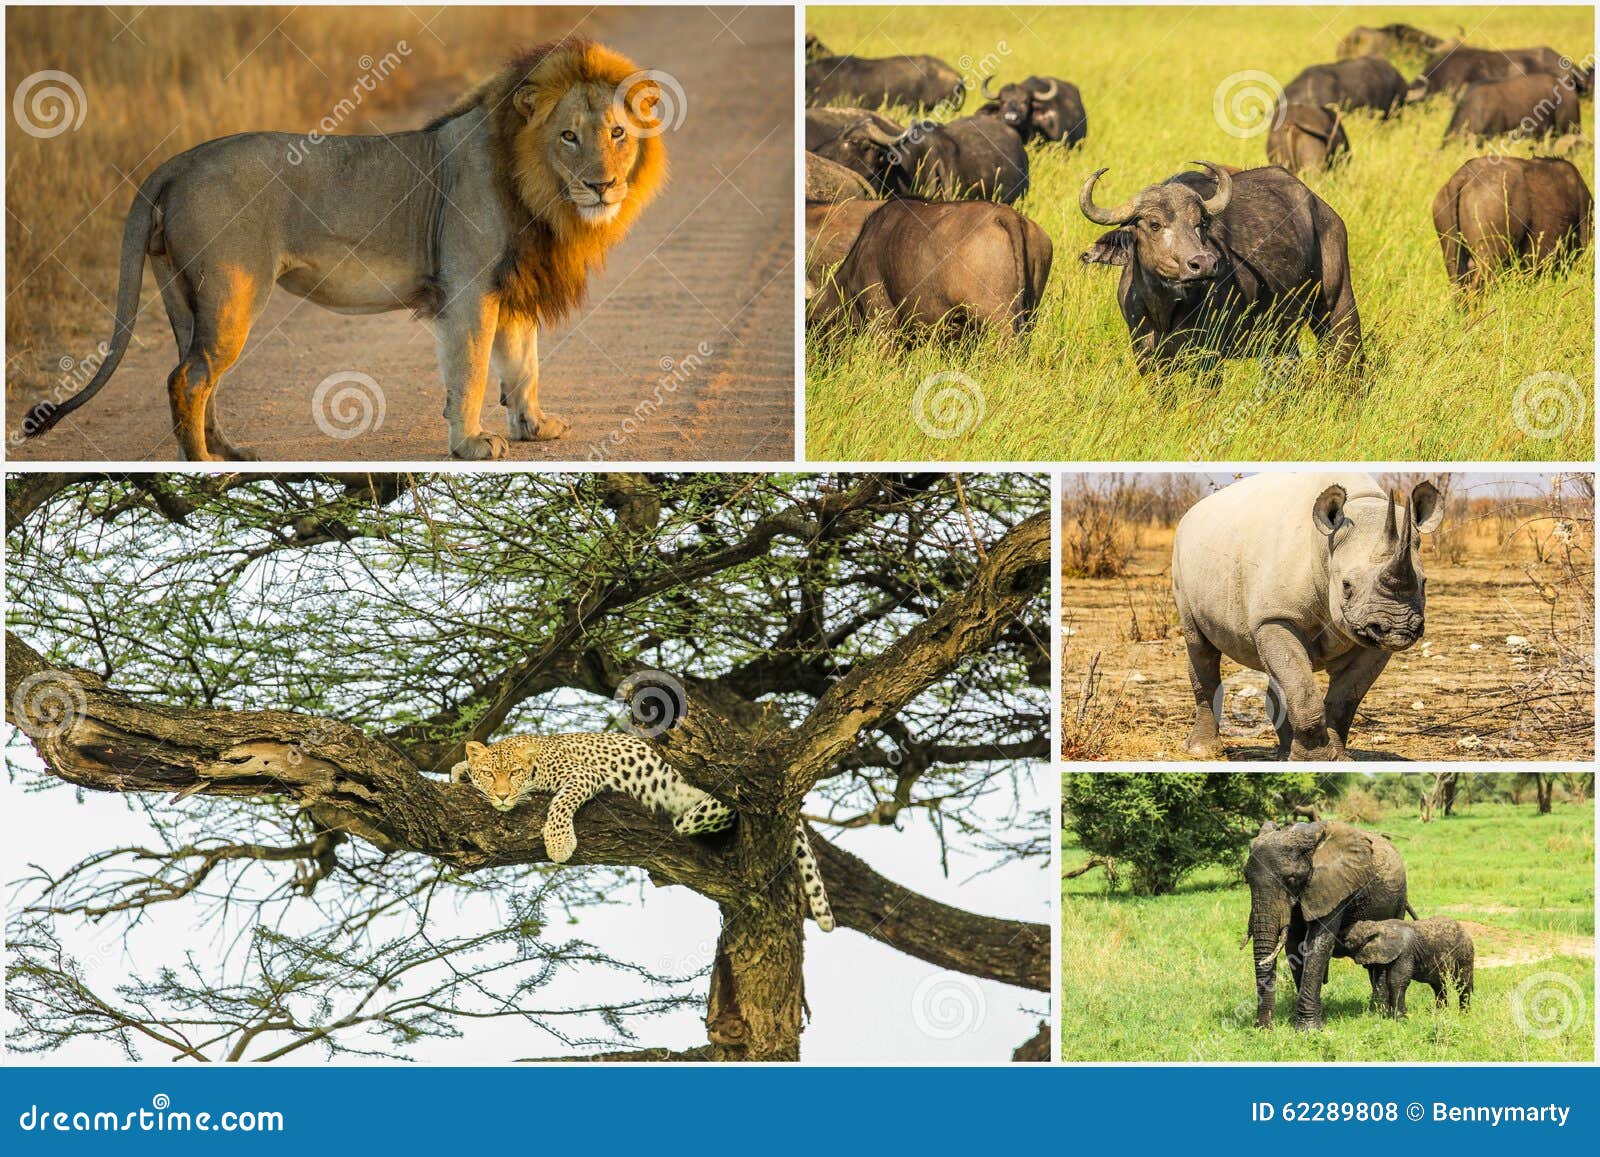 Носороги буйволы слоны обитают. Big Five Африка. Большая пятерка Африки сафари. Большая пятерка животных Африки. Африканская 5 животных.